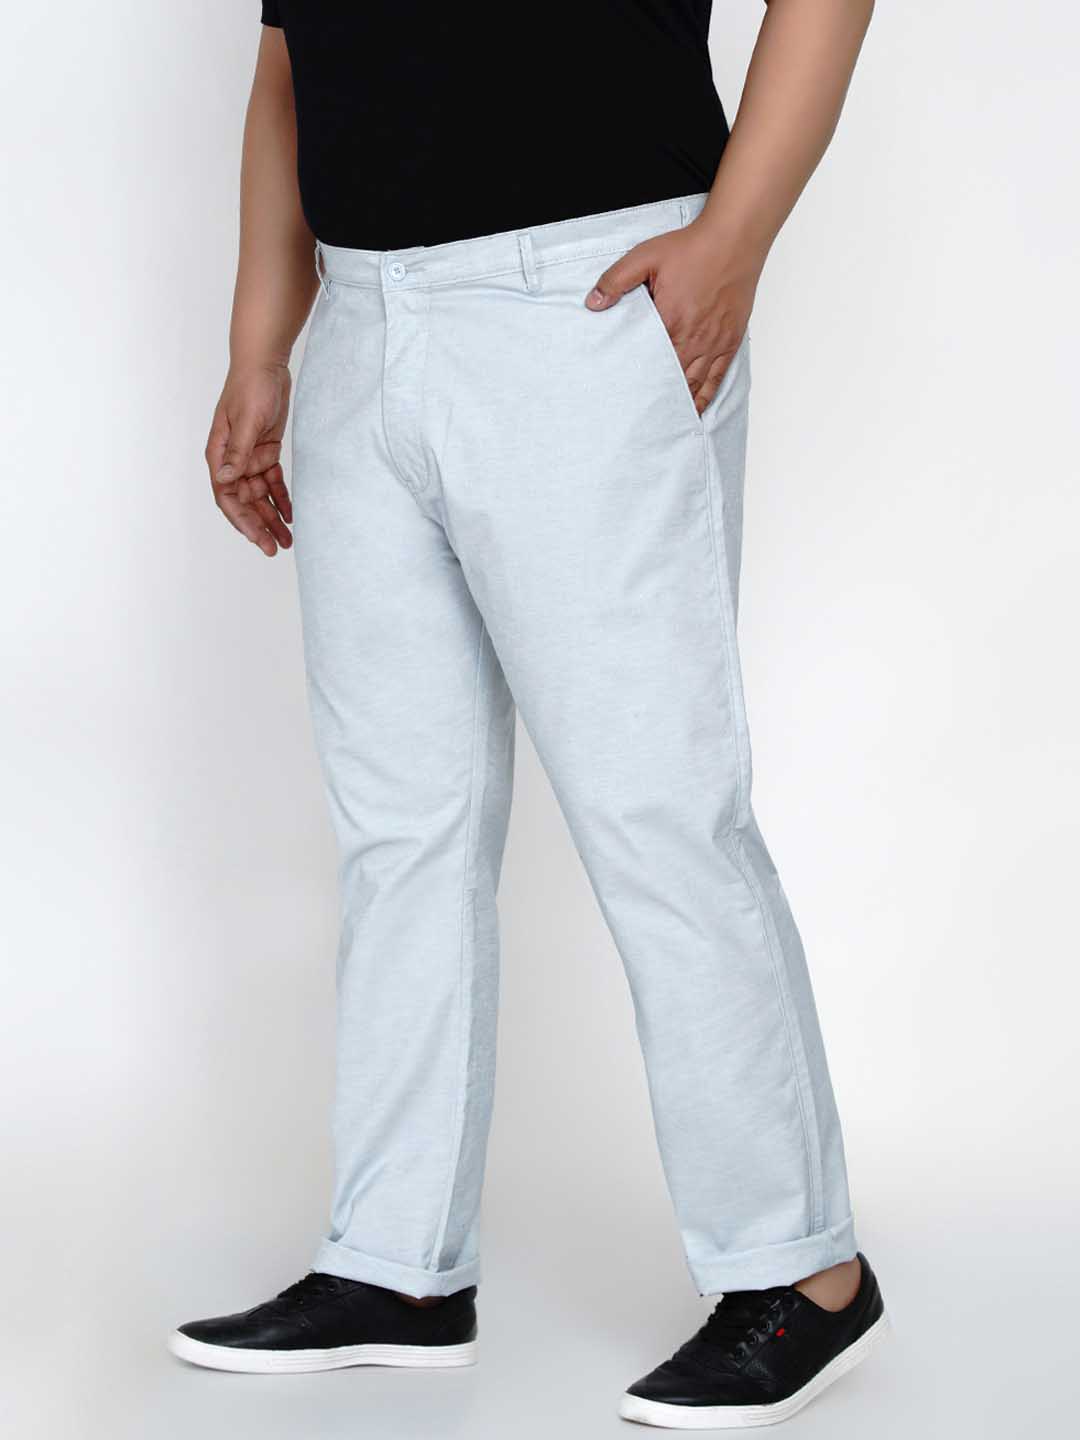 bottomwear/trousers/JPTR2165B/jptr2165b-3.jpg